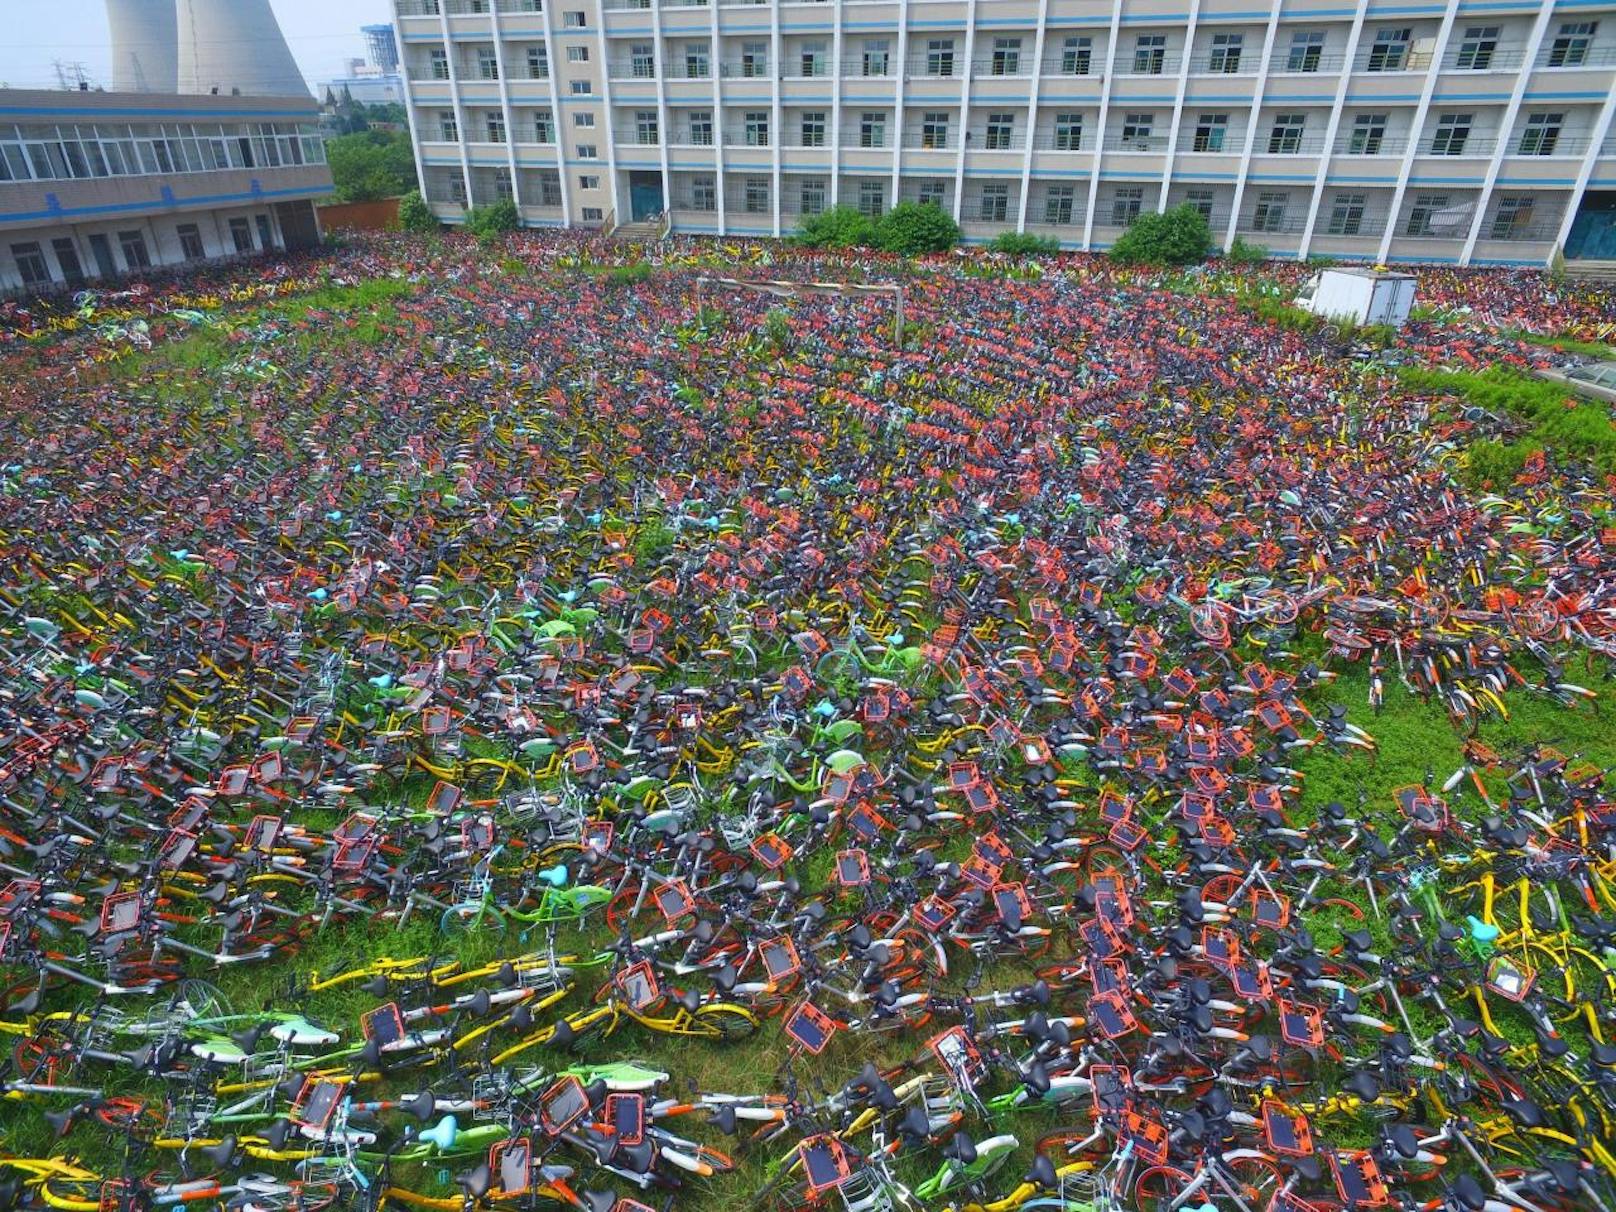 Hefei in China: Um die Stadt sauber zu halten, wurden 10.000 illegal abgestellte Leihräder eingesammelt.